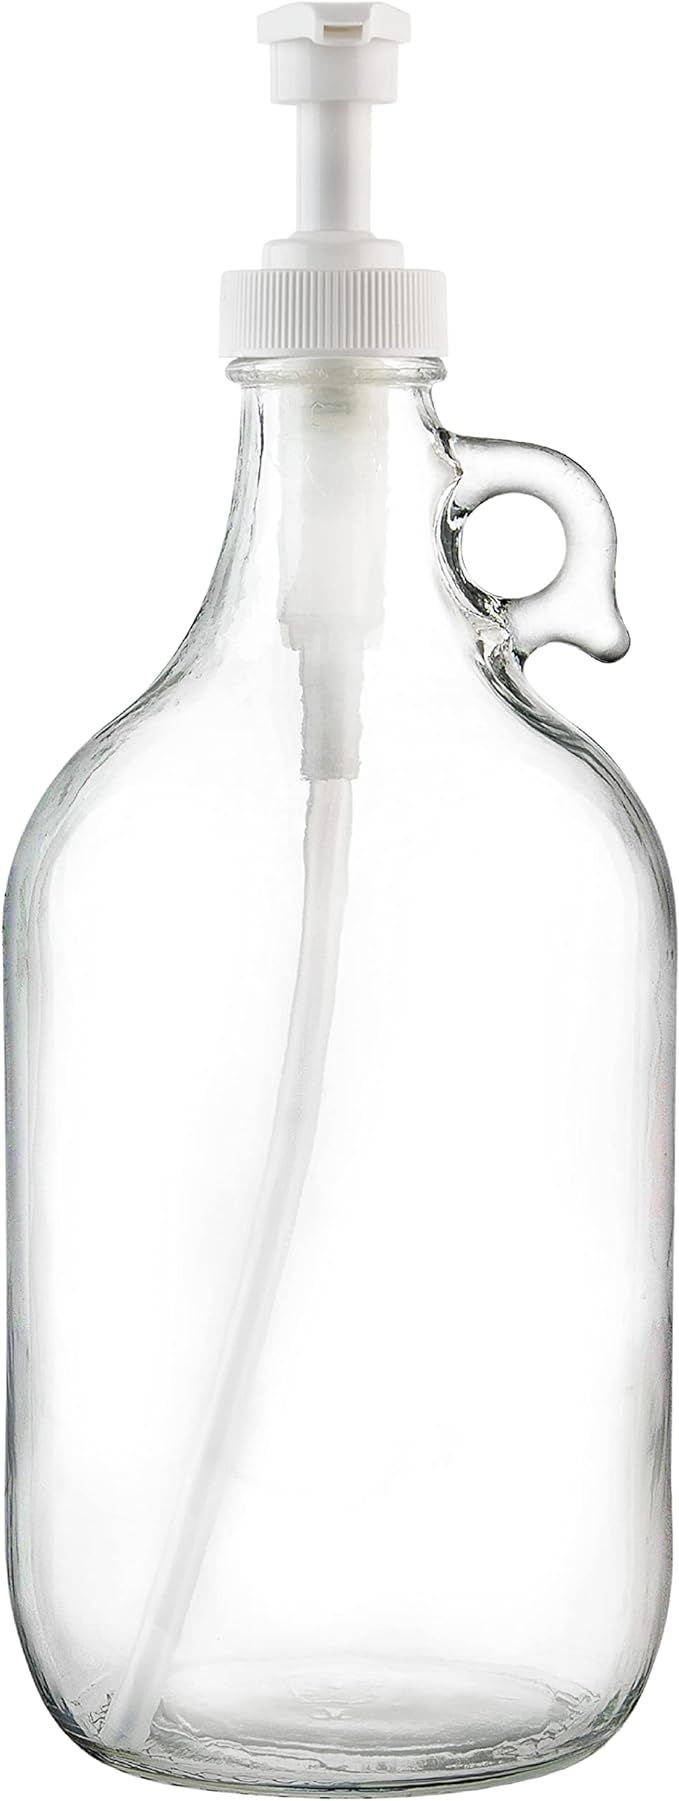 Half Gallon Glass Pump Dispenser Bottle, Large Jug with Pump for Laundry Soap Dispenser, Liquid D... | Amazon (US)